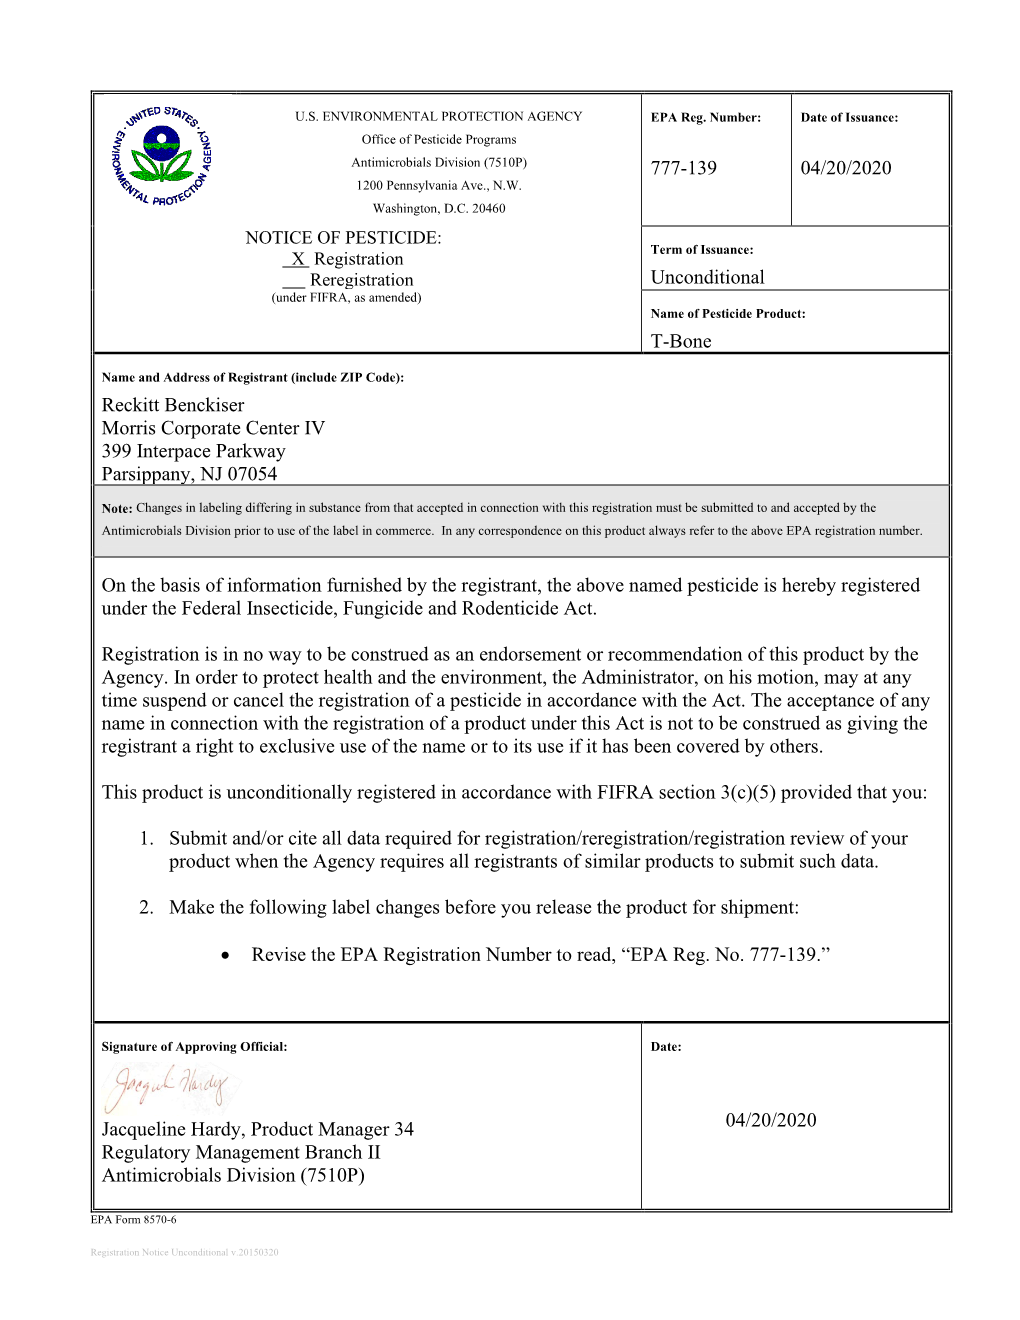 US EPA, Pesticide Product Label, T-Bone,04/20/2020